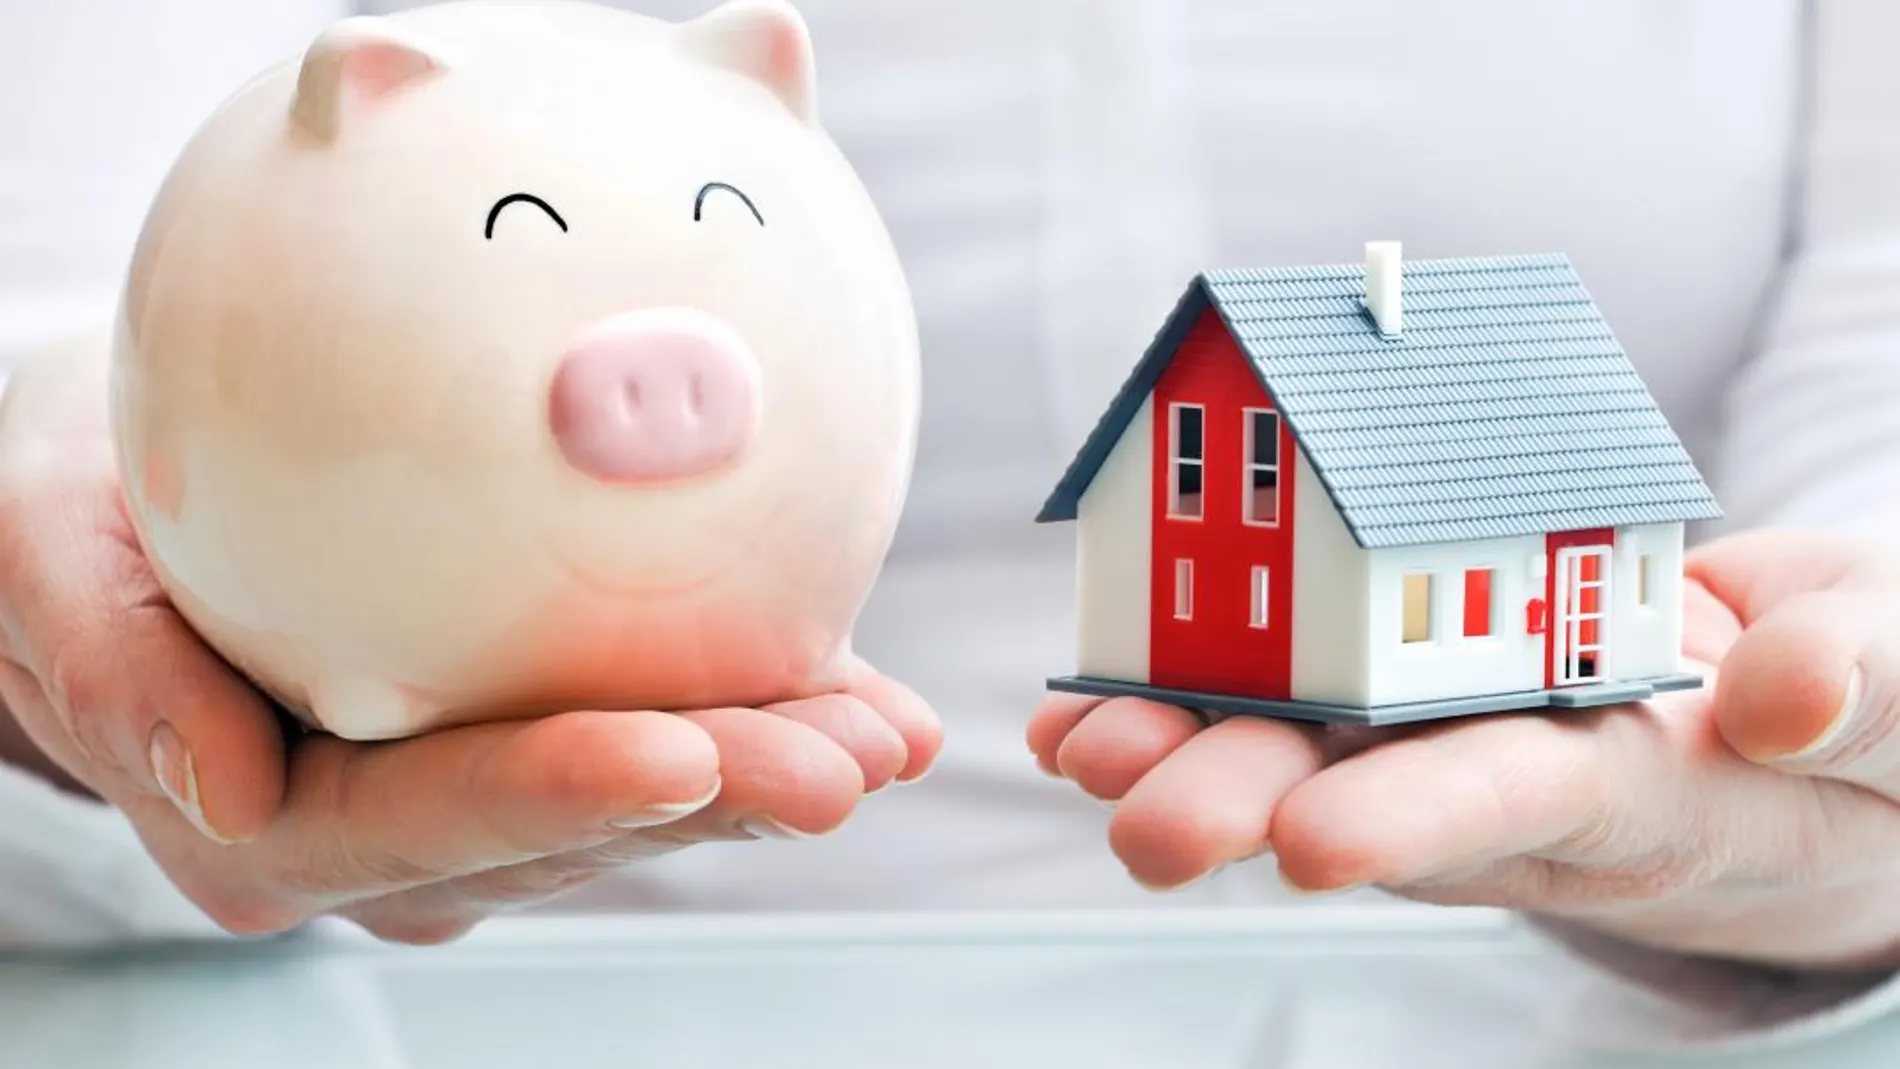 Amortizar la hipoteca o invertir: ¿qué sale más a cuenta con el euríbor en negativo?